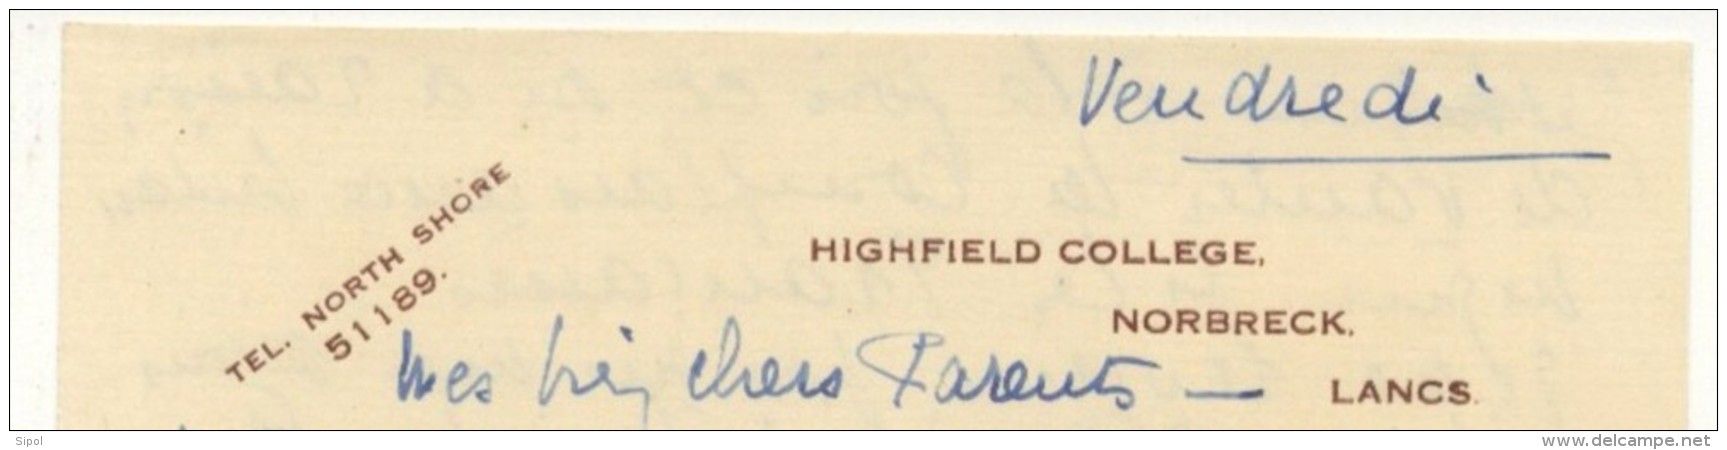 Lettre à Entête Highfield College ,  Norbreck Lancs  1935 Enviton BE - Royaume-Uni